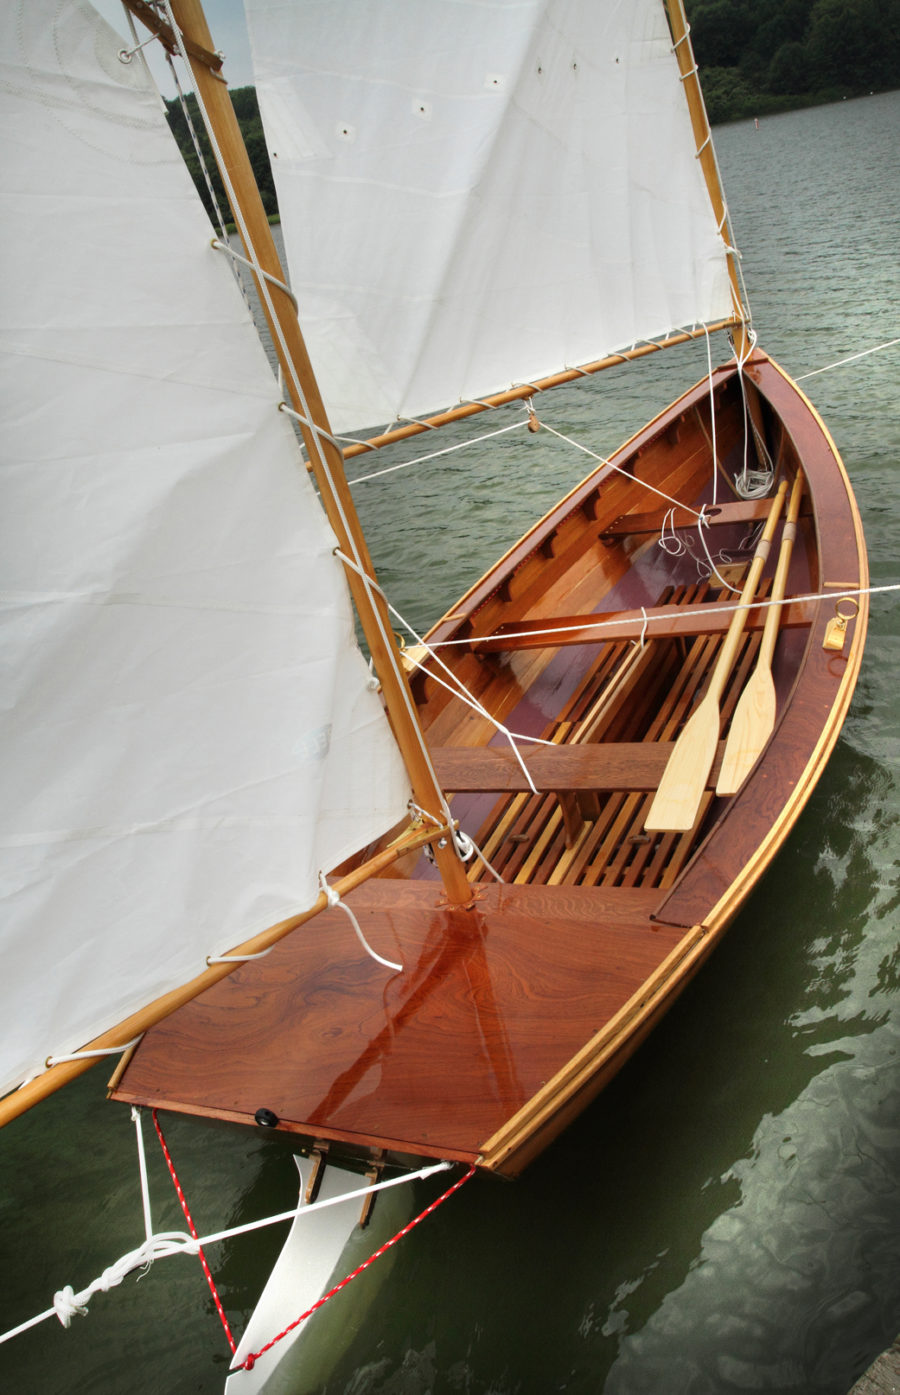 herreshoff small sailboats